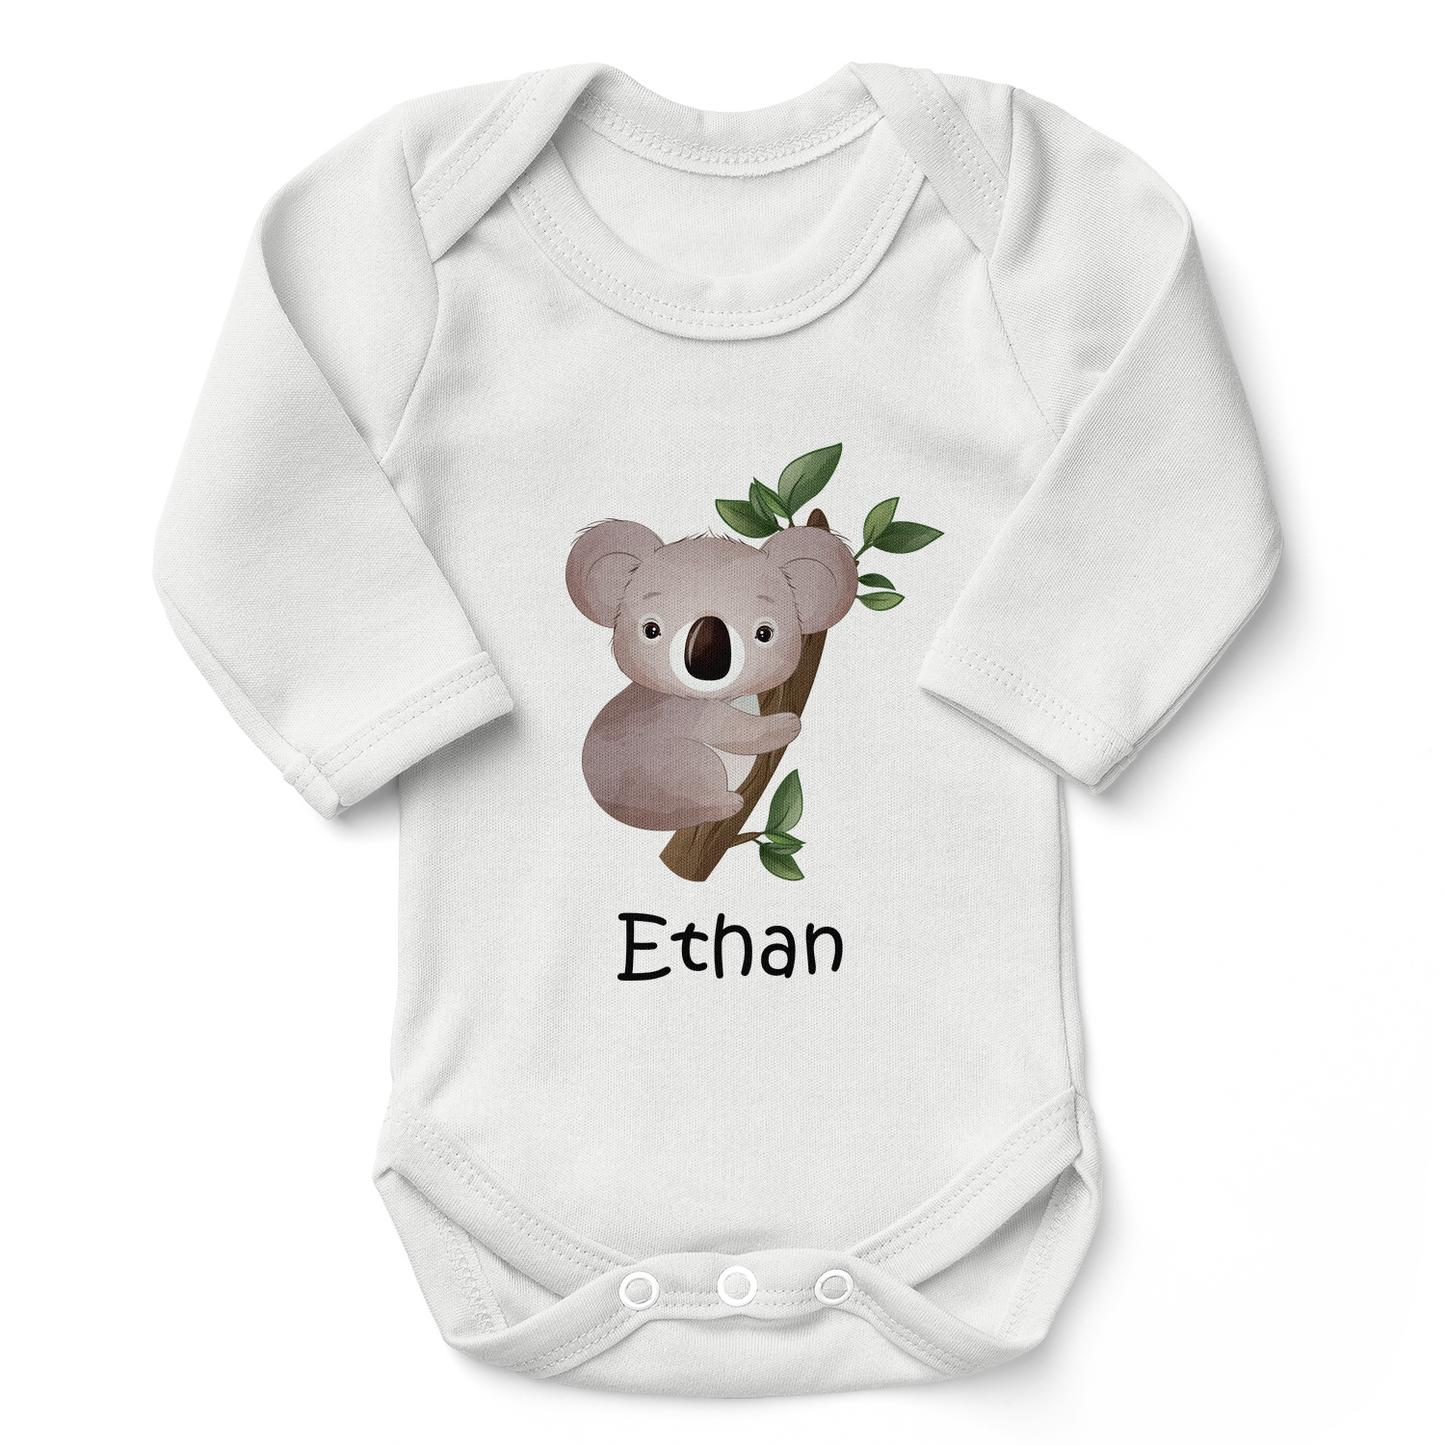 [Personalized] Endanzoo Organic Baby Bodysuit - Koala